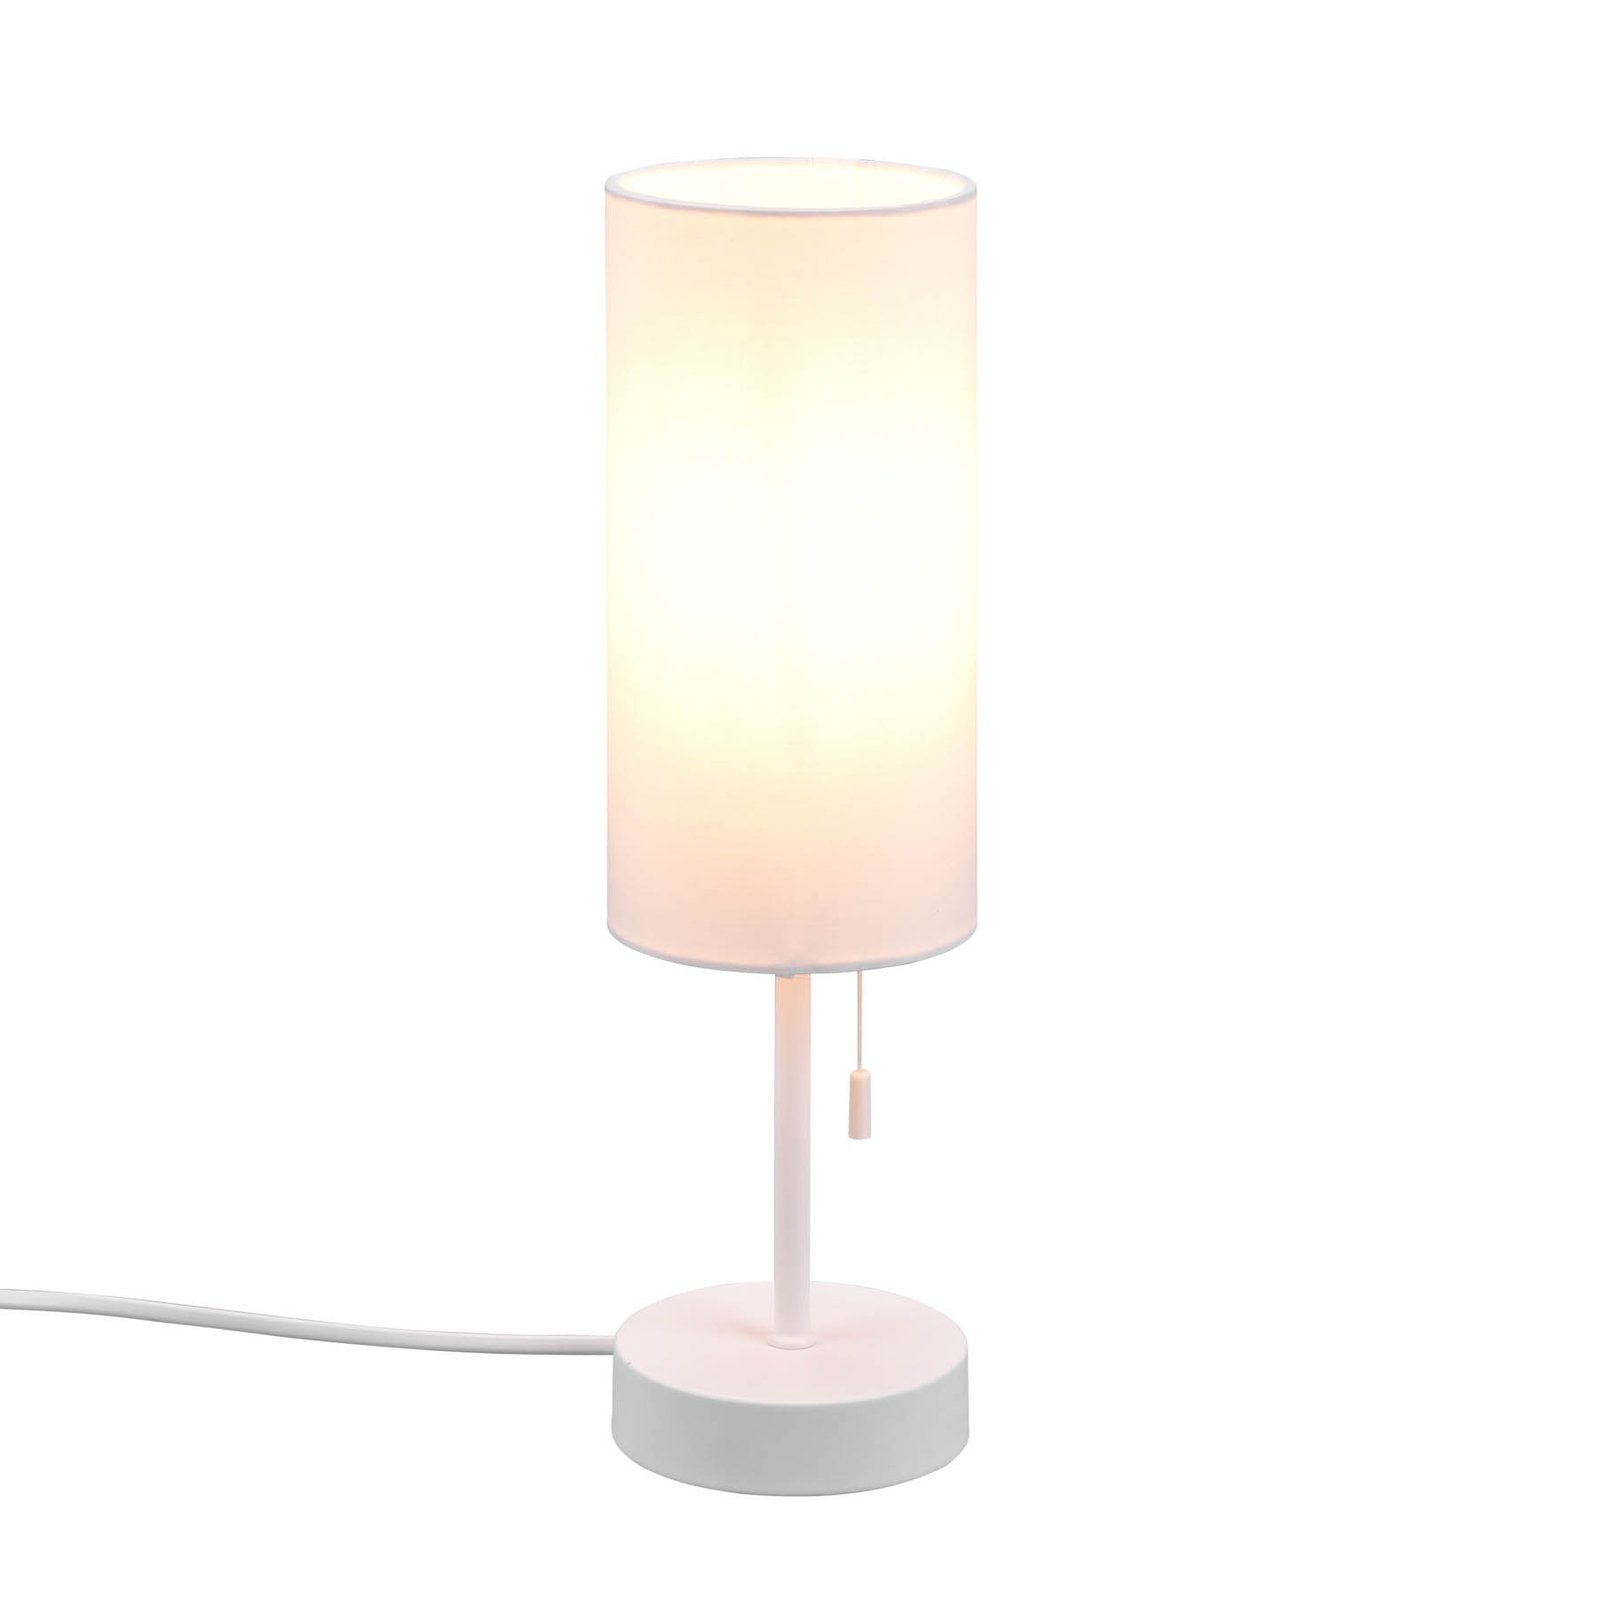 Tafellamp Jaro met USB-aansluiting, wit/wit